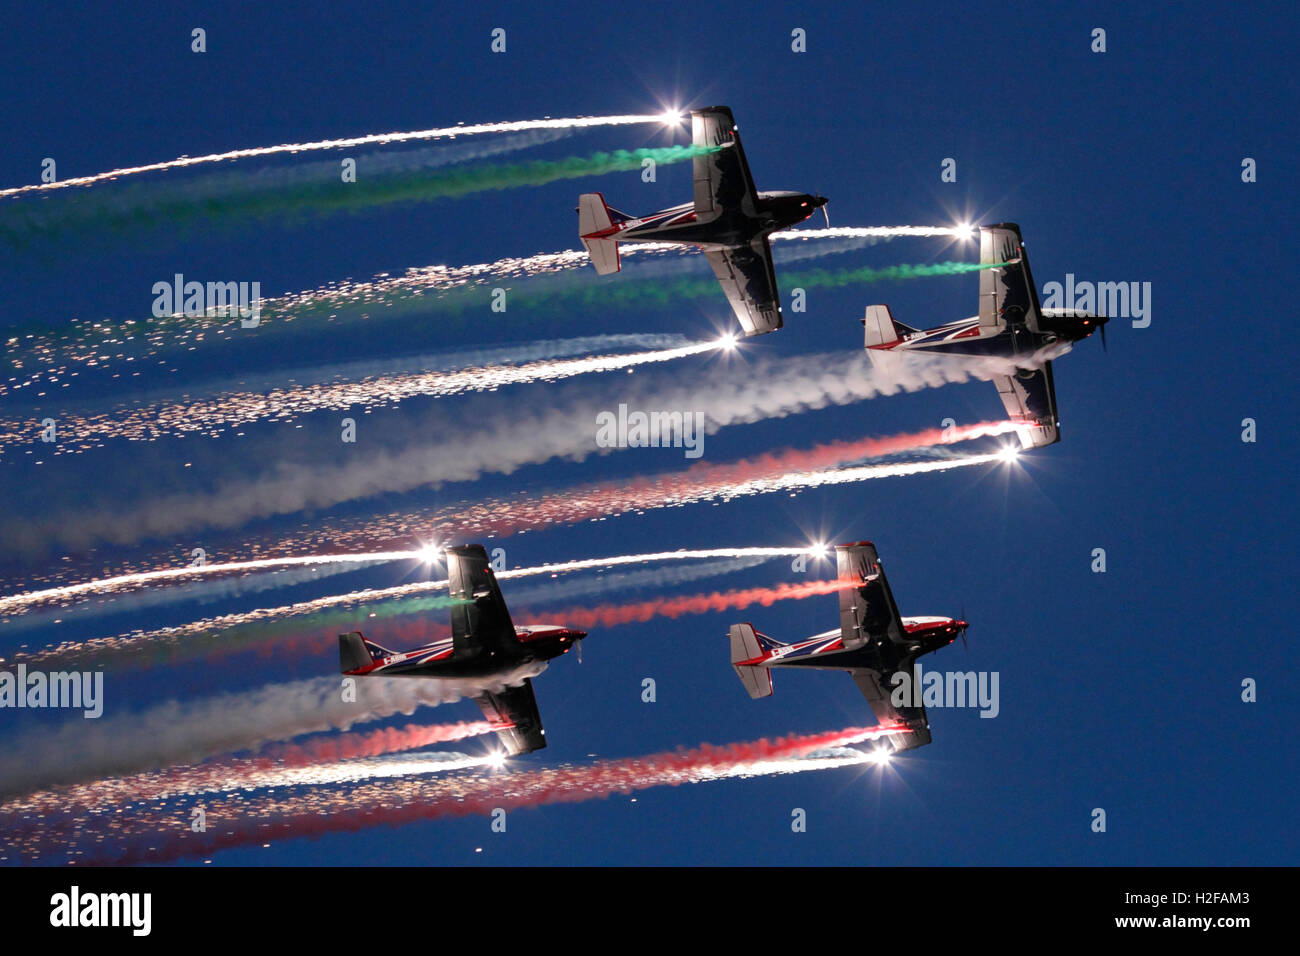 El equipo de pioneros que enarbolen su Alpi pionero de la Aviación 300 aviones en un espectacular airshow mostrar al atardecer Foto de stock